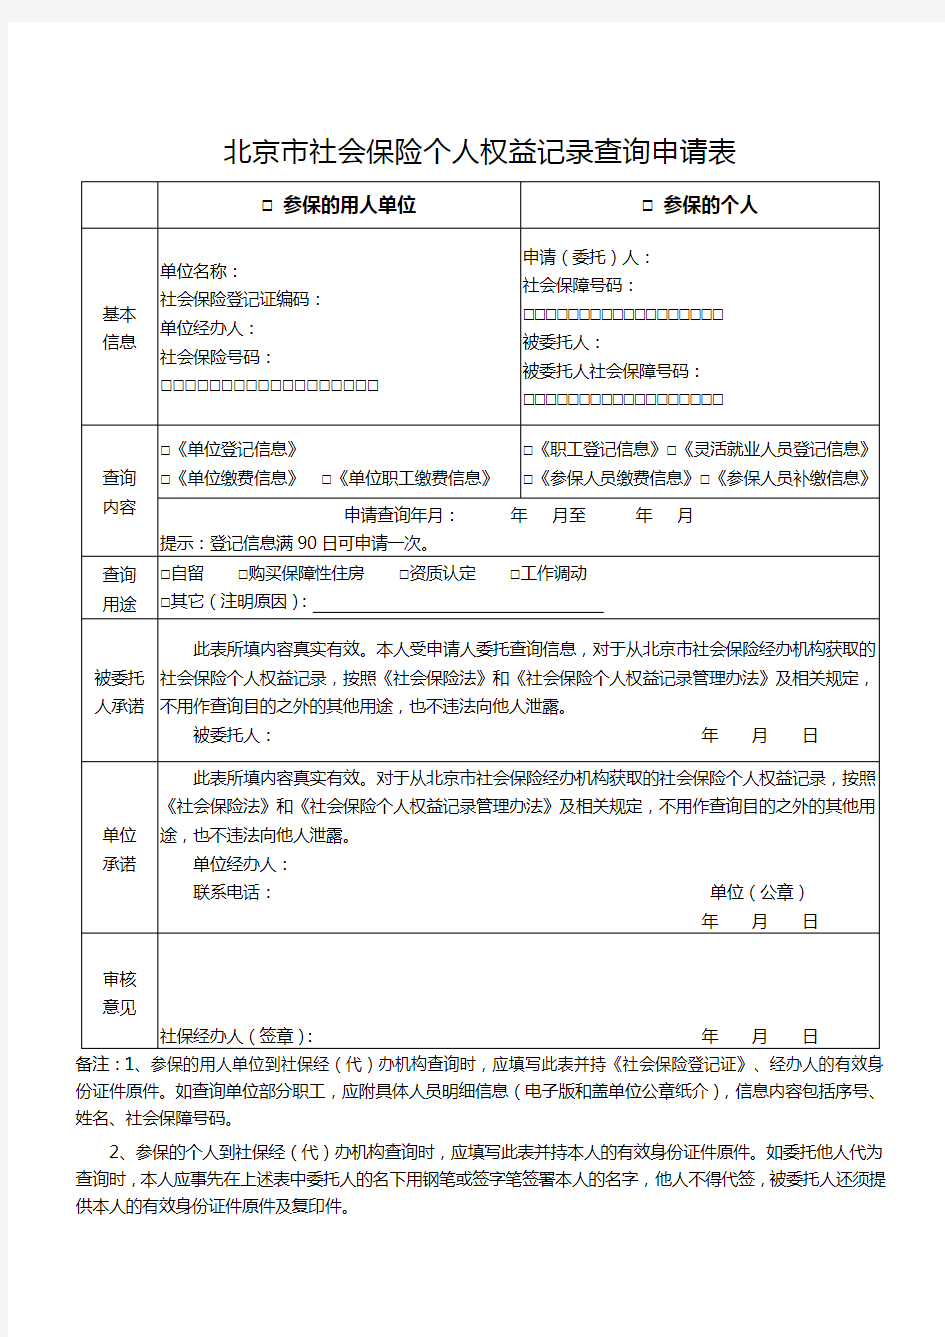 北京市社会保险个人权益记录查询申请表(空表和表样)